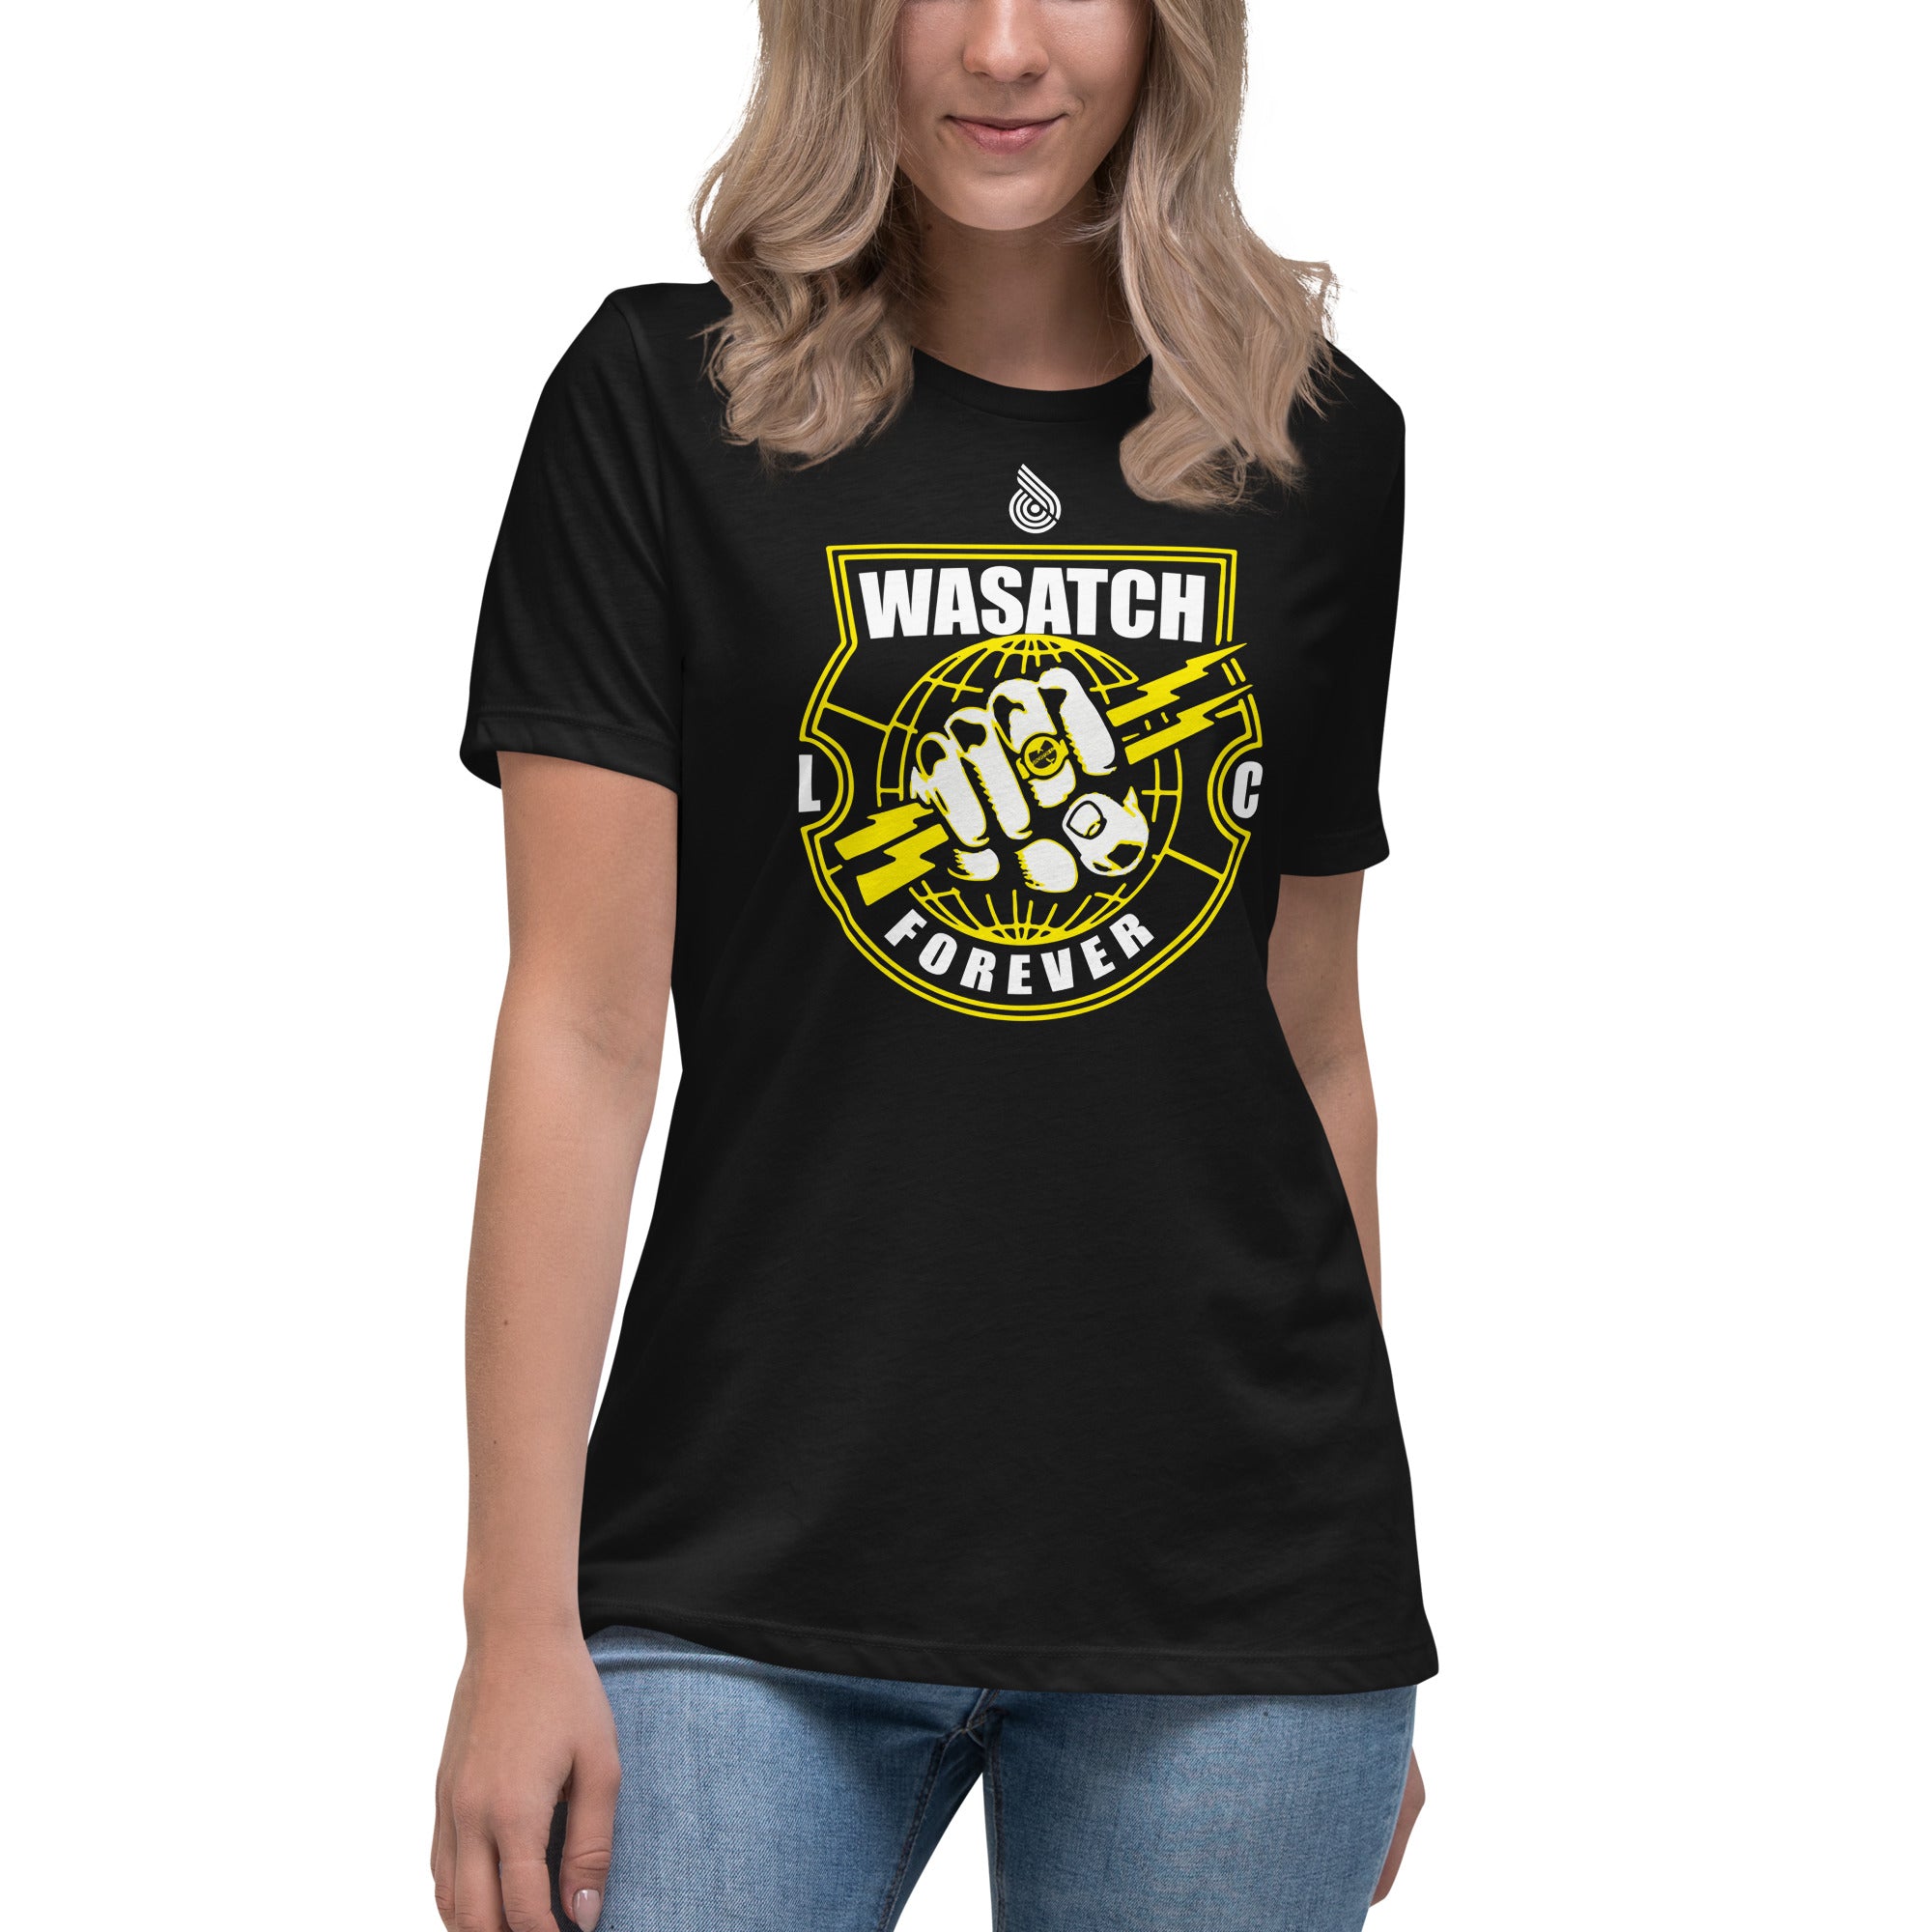 Wasatch LC Women's T-Shirt